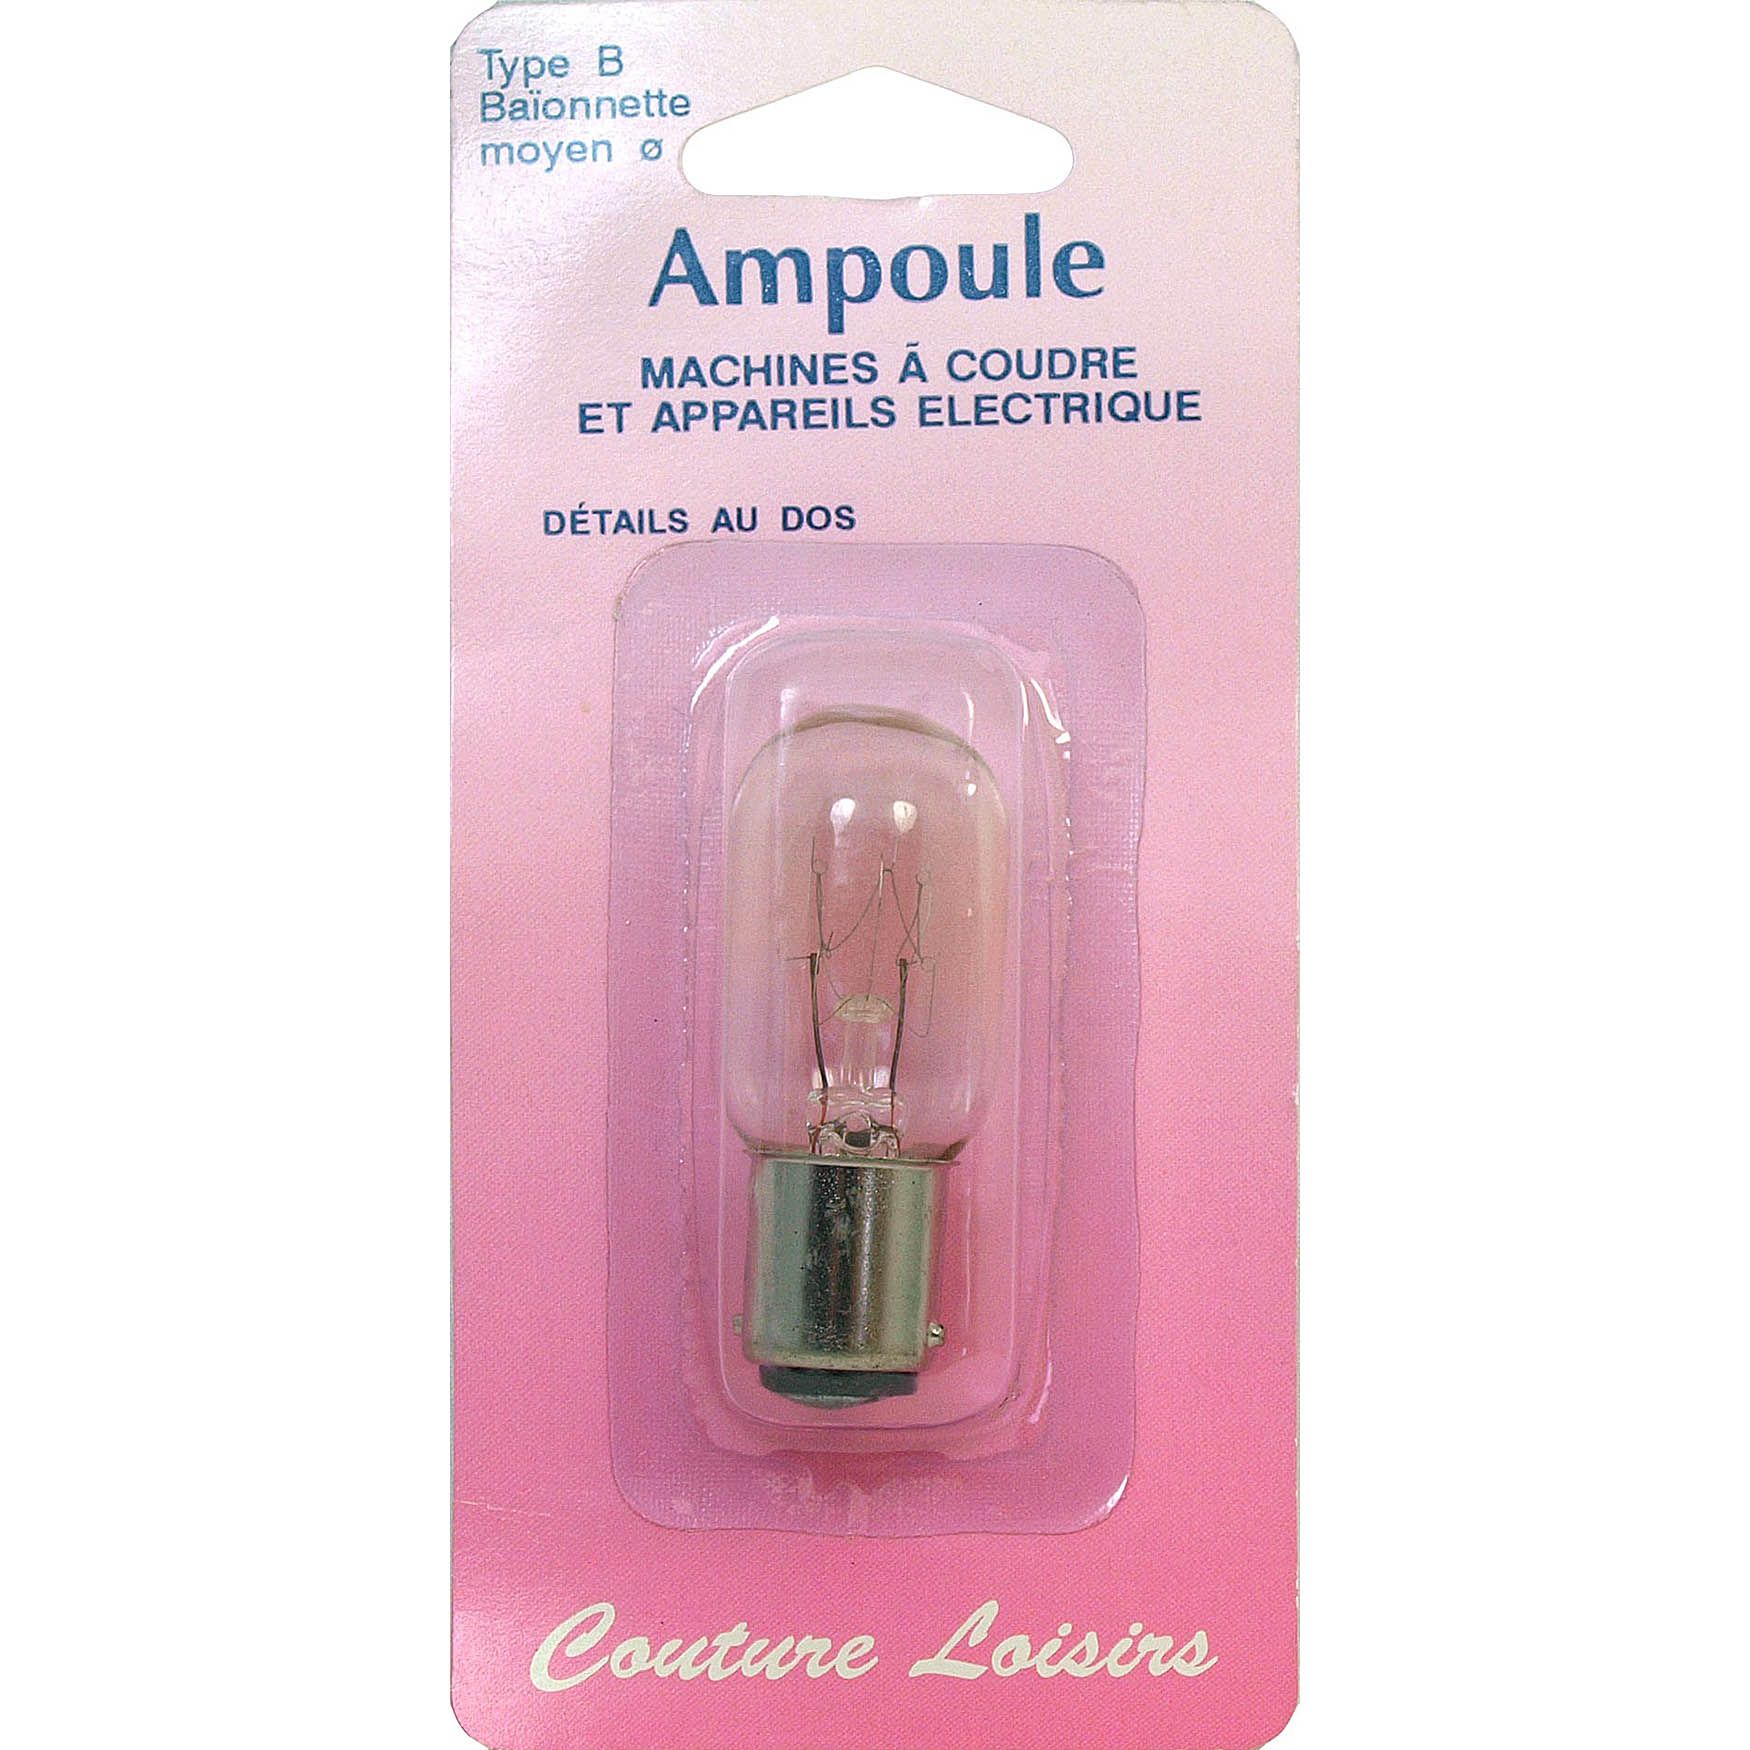 Ampoule 15w / 240 v baionnette moyenne - H130M